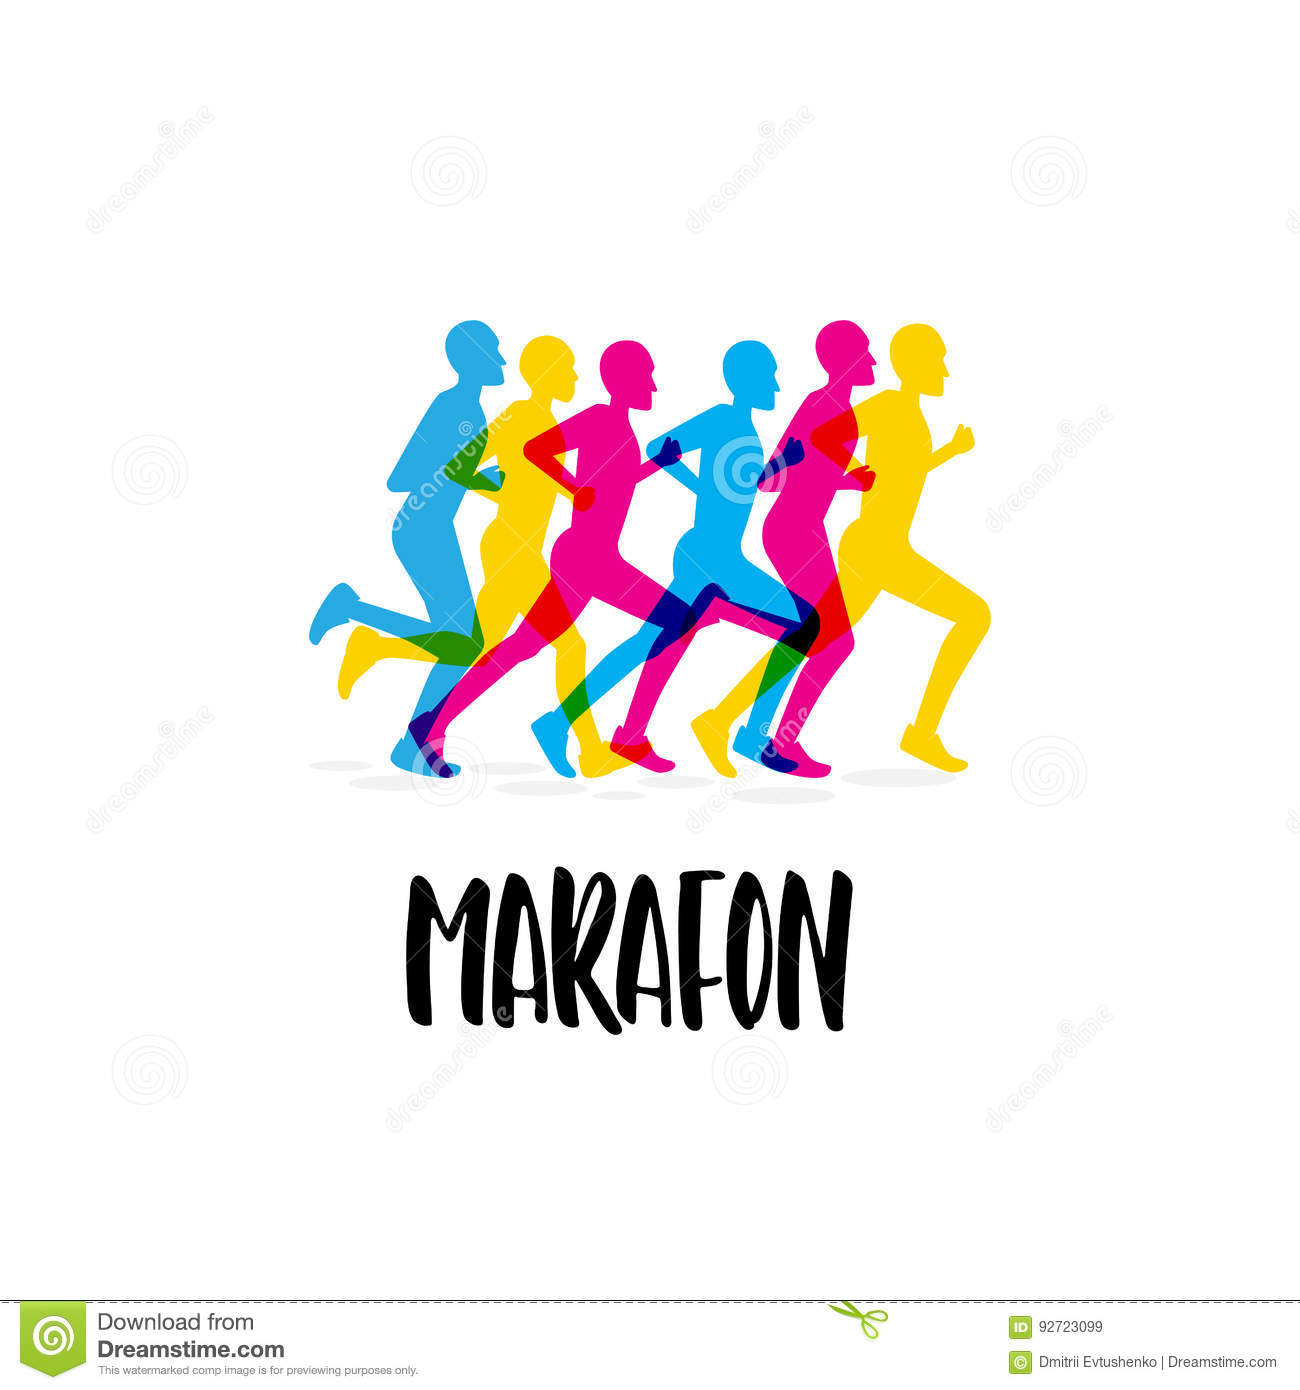 марафон-спортивного-соревнования-92723099